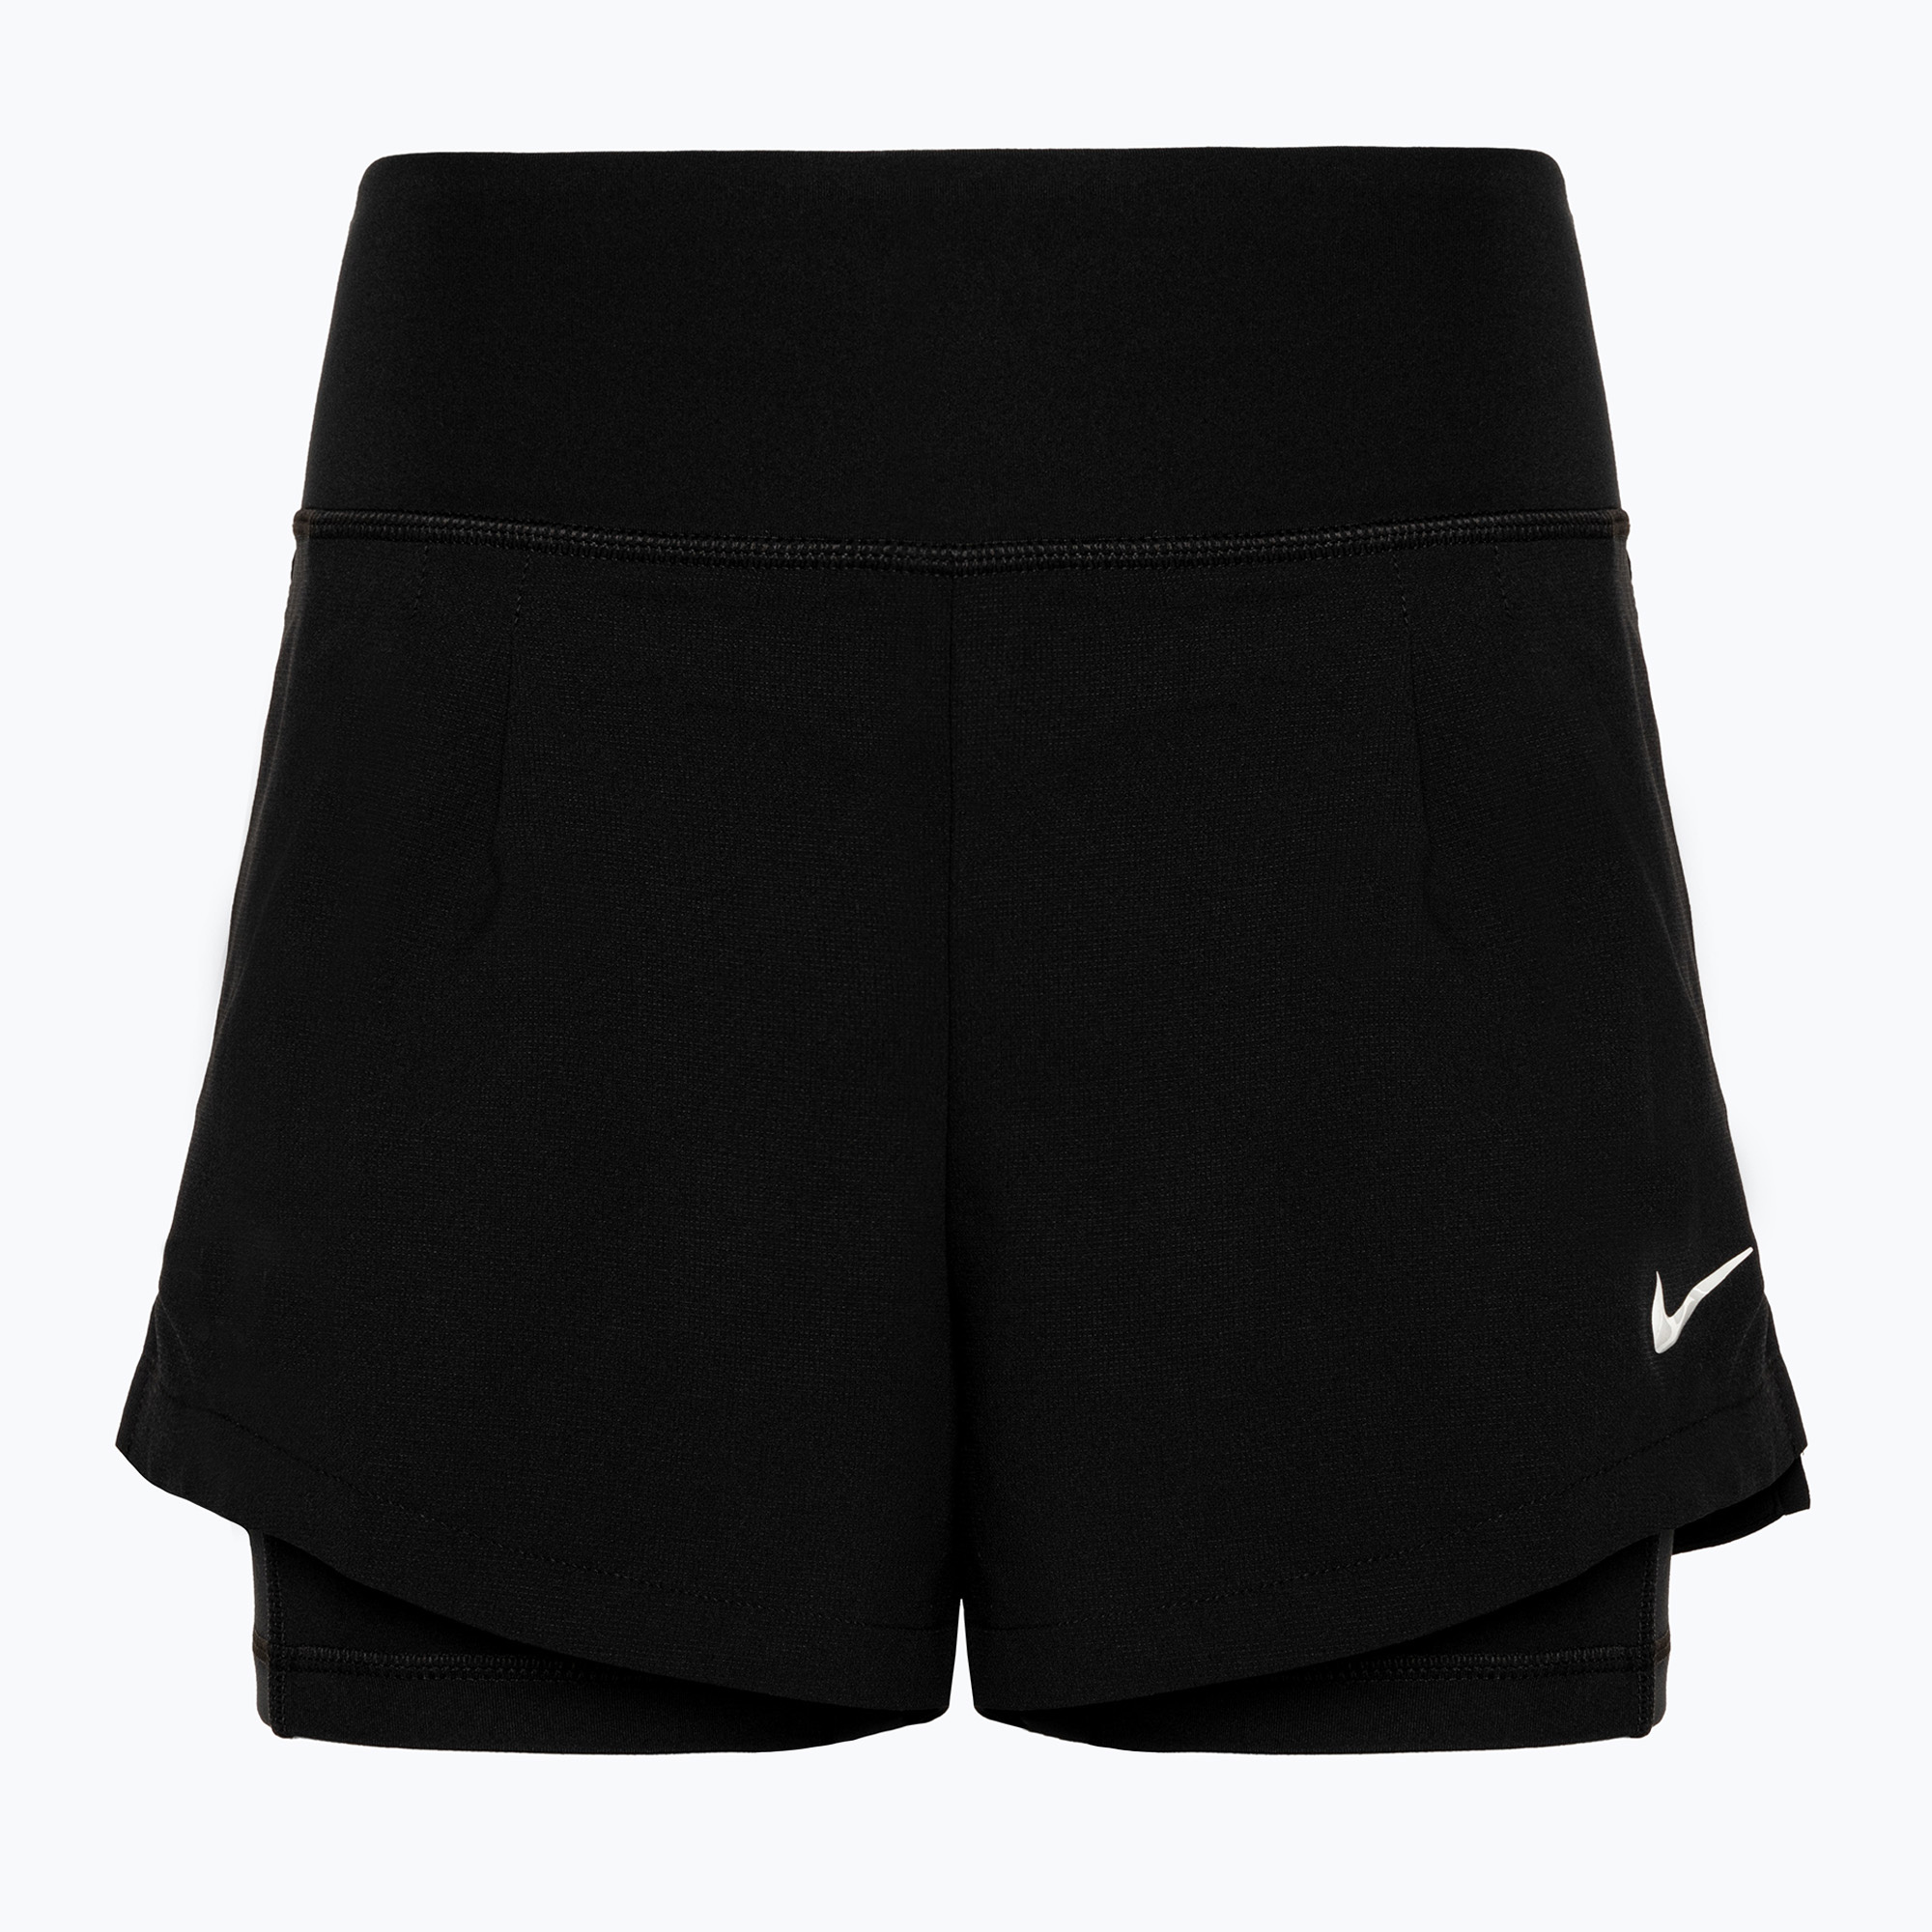 Дамски шорти за тенис Nike Court Dri-Fit Advantage, черни/бели